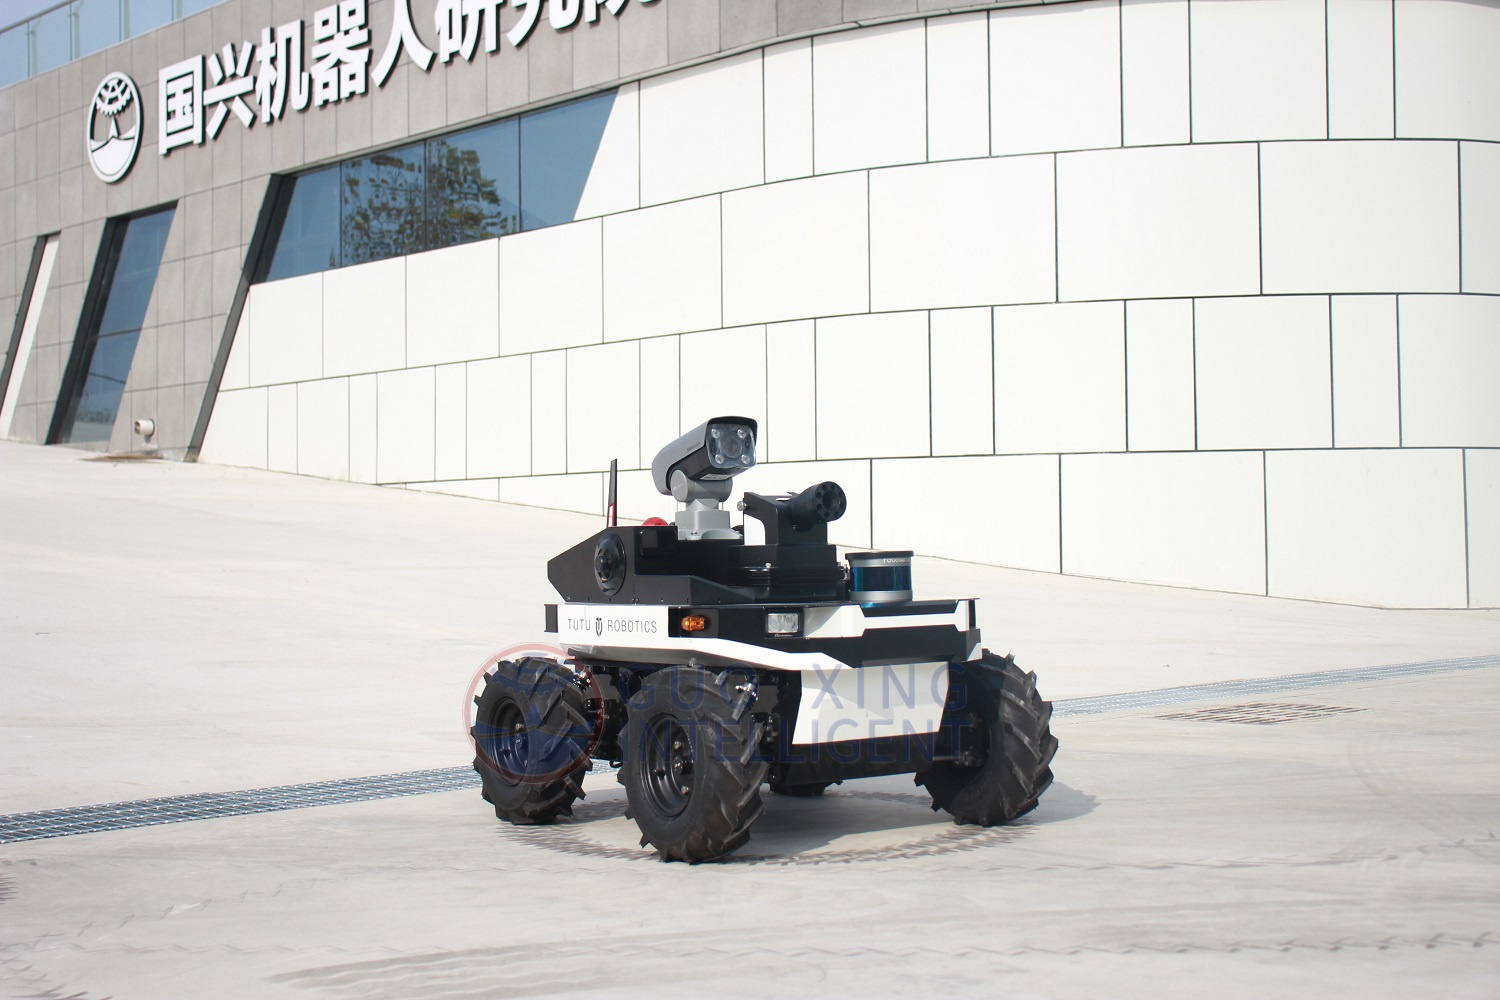 Sicherheitsbeamte, Polizisten, unbemannter AGV-Roboter